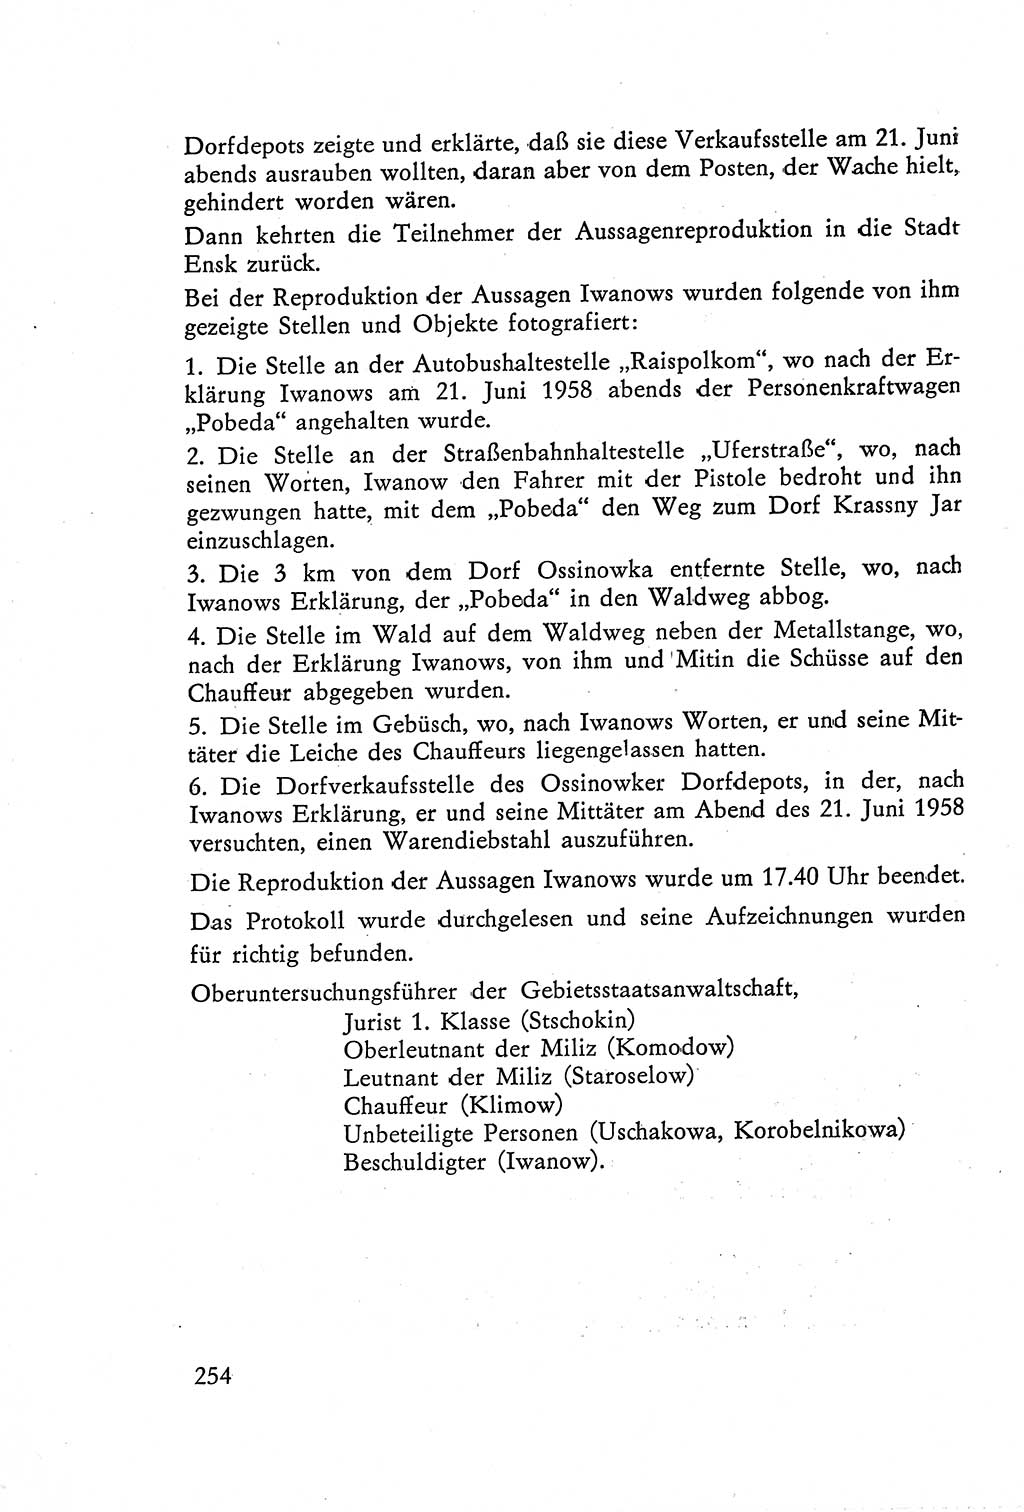 Die Vernehmung [Deutsche Demokratische Republik (DDR)] 1960, Seite 254 (Vern. DDR 1960, S. 254)